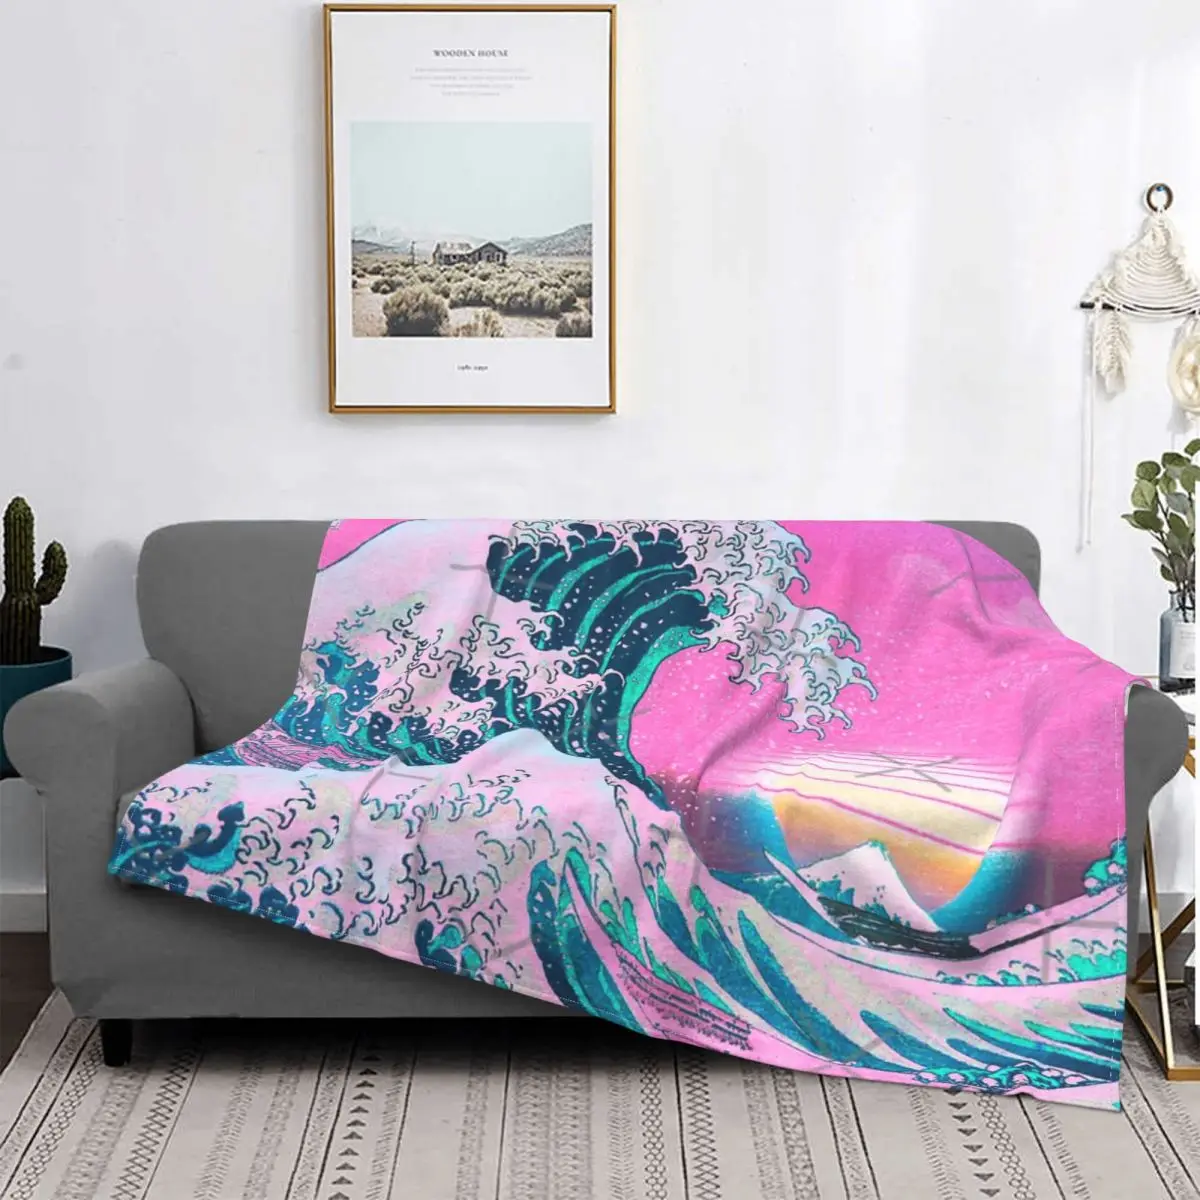 

Эстетика Vaporwave большое волнистое одеяло покрывало для кровати плед муслиновый чехол для дивана покрывало покрывала для кровати